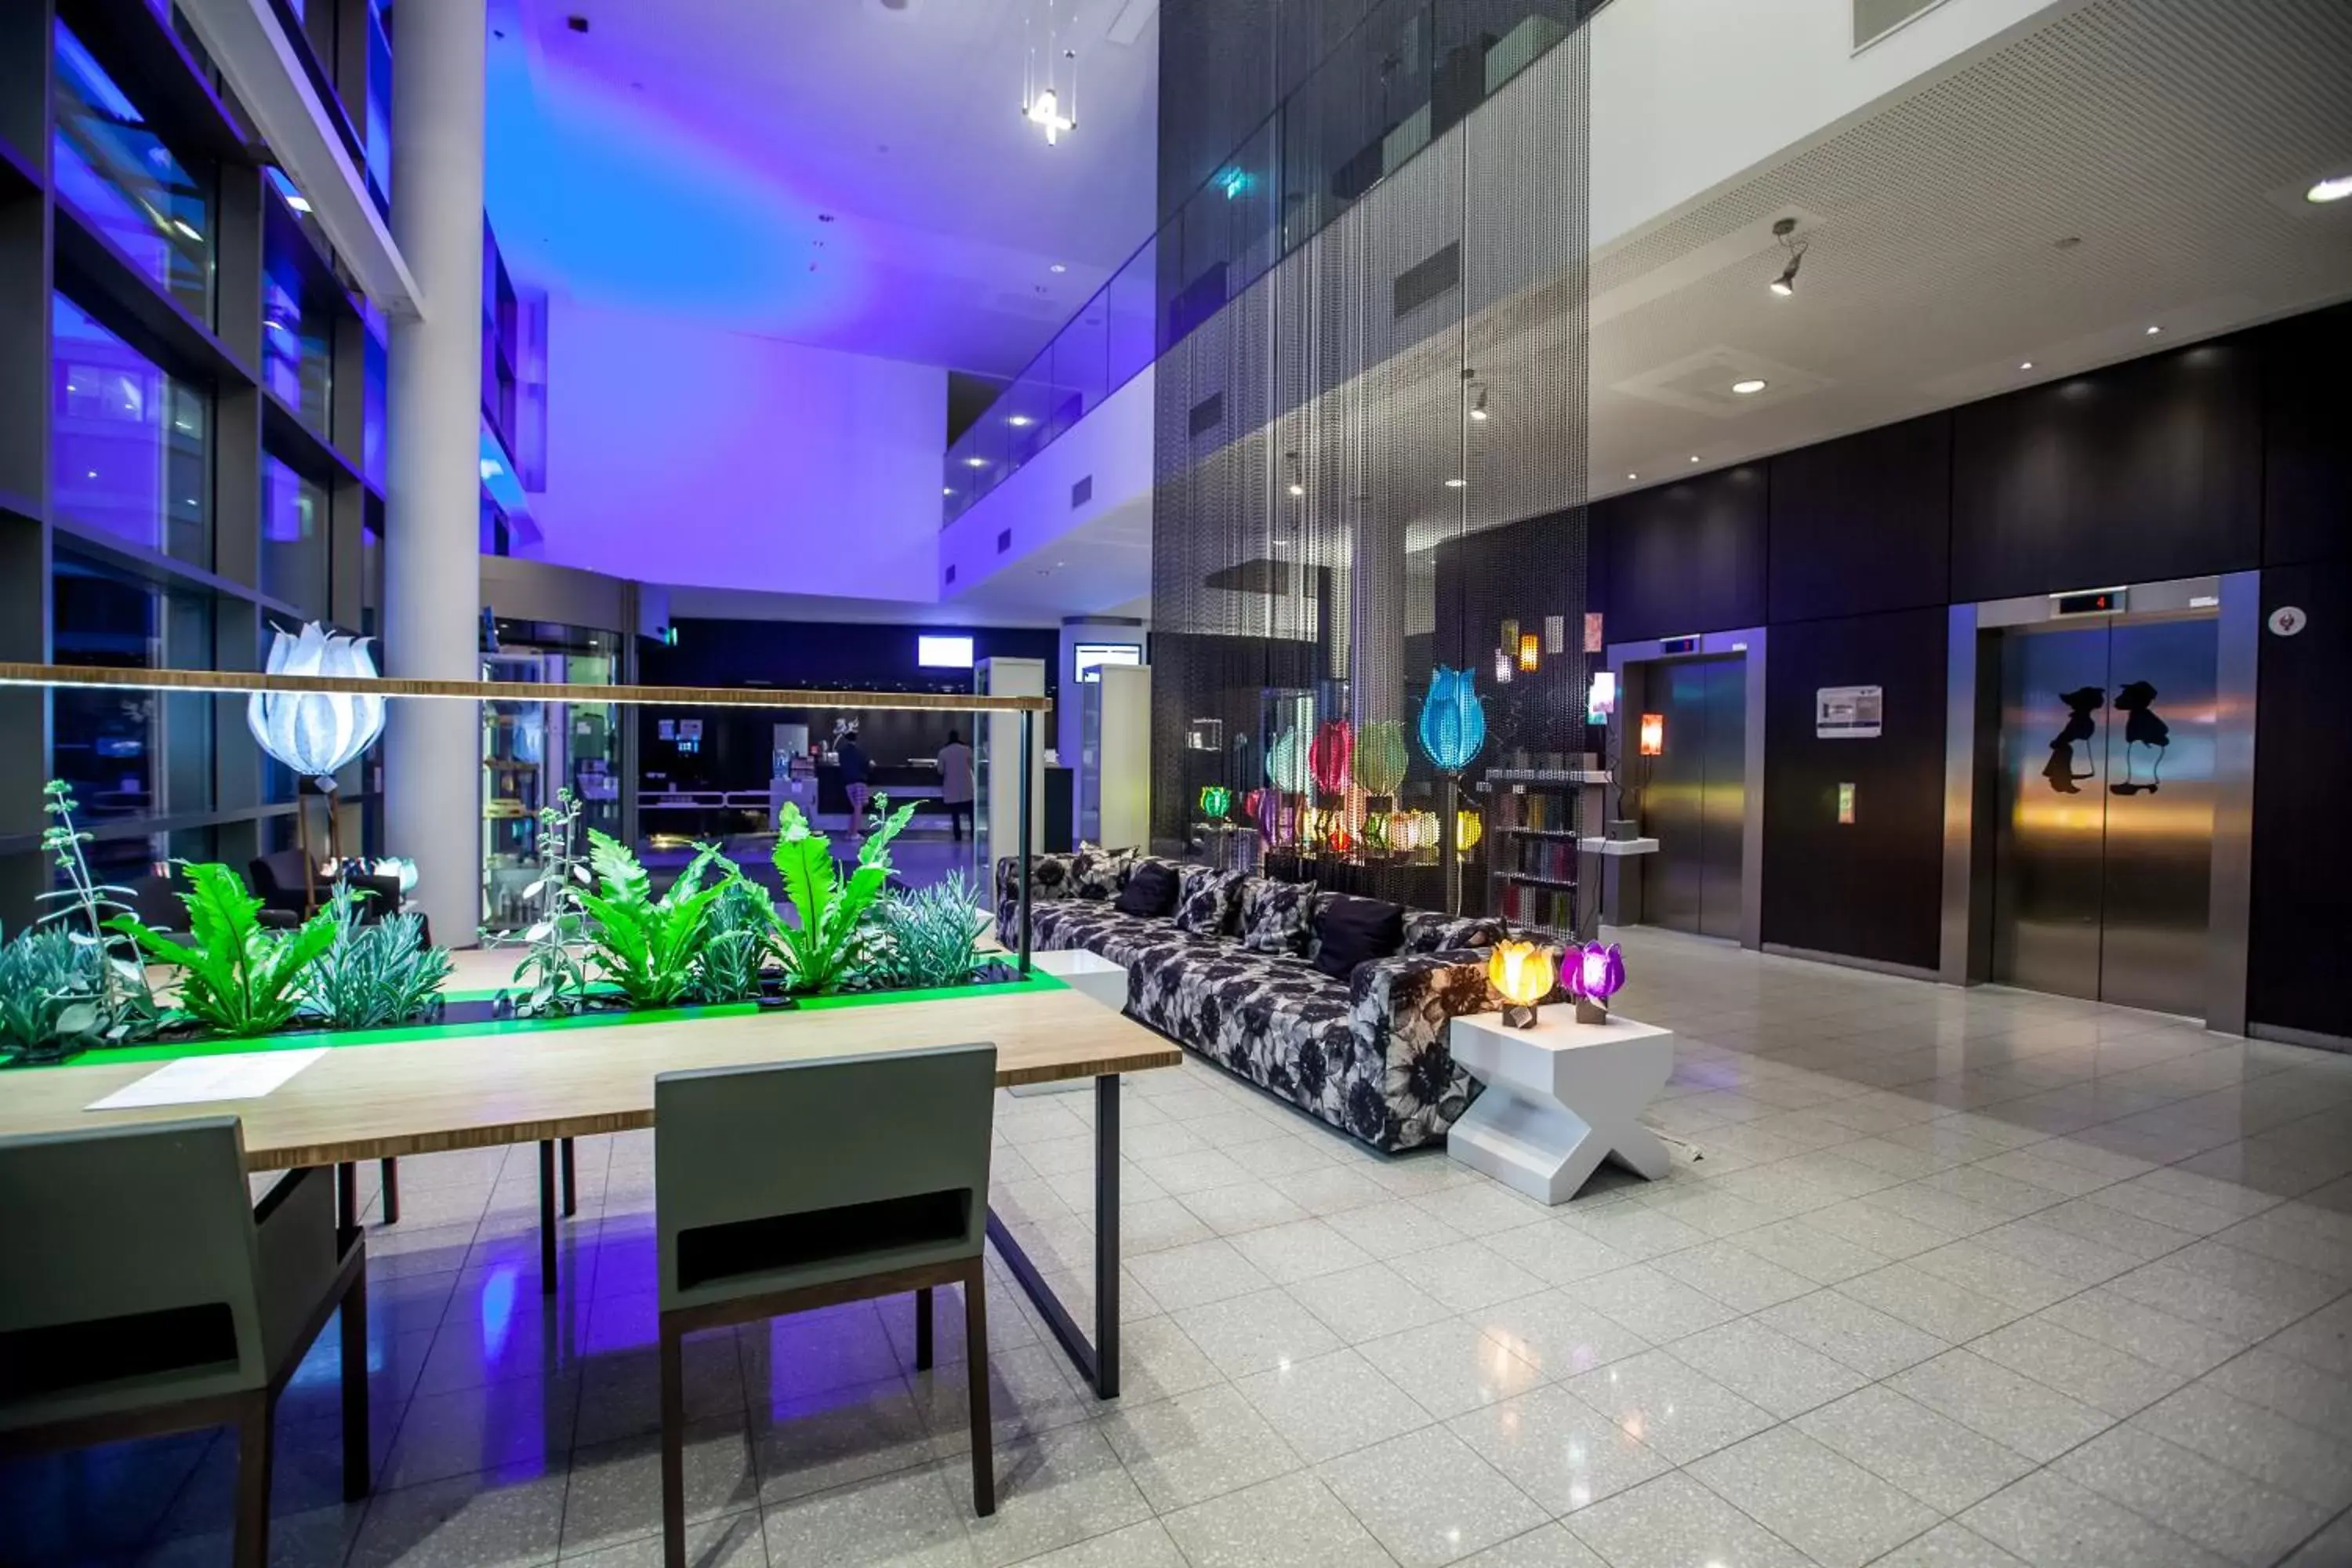 Lobby or reception in Dutch Design Hotel Artemis